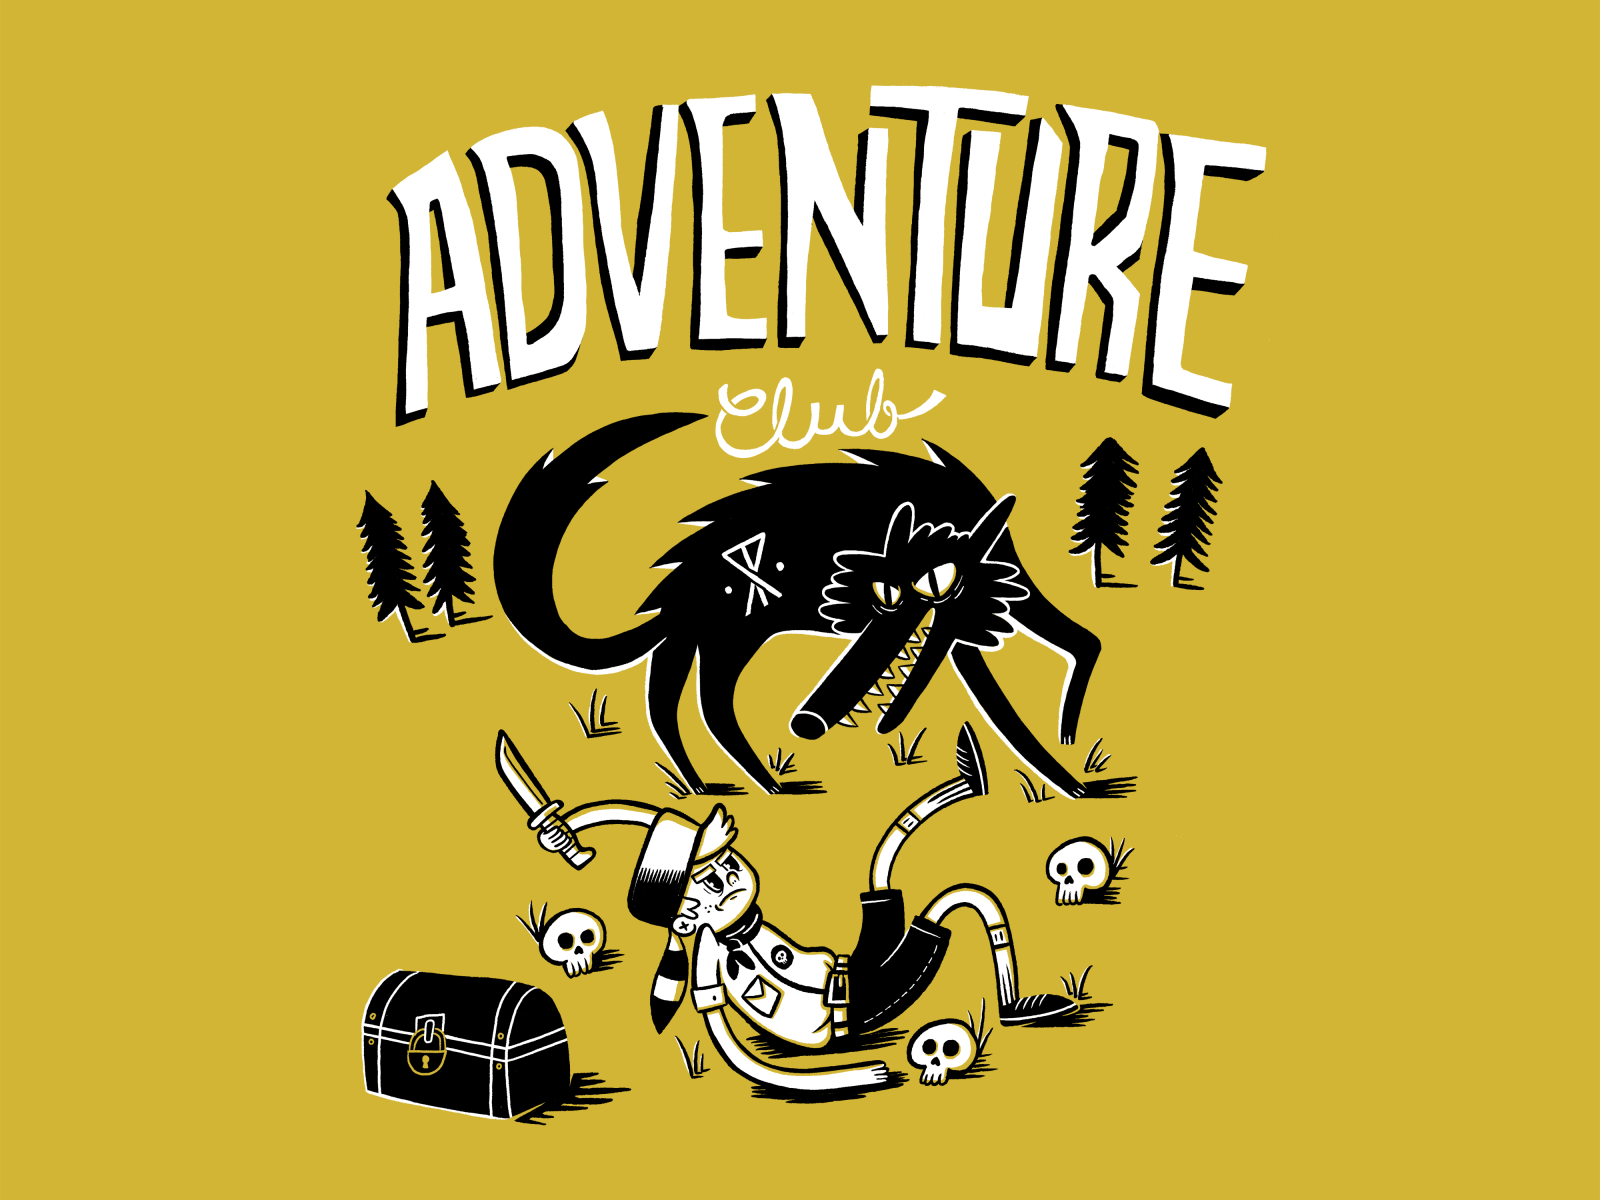 Roark Adventure Club by Steven Roberts on Dribbble